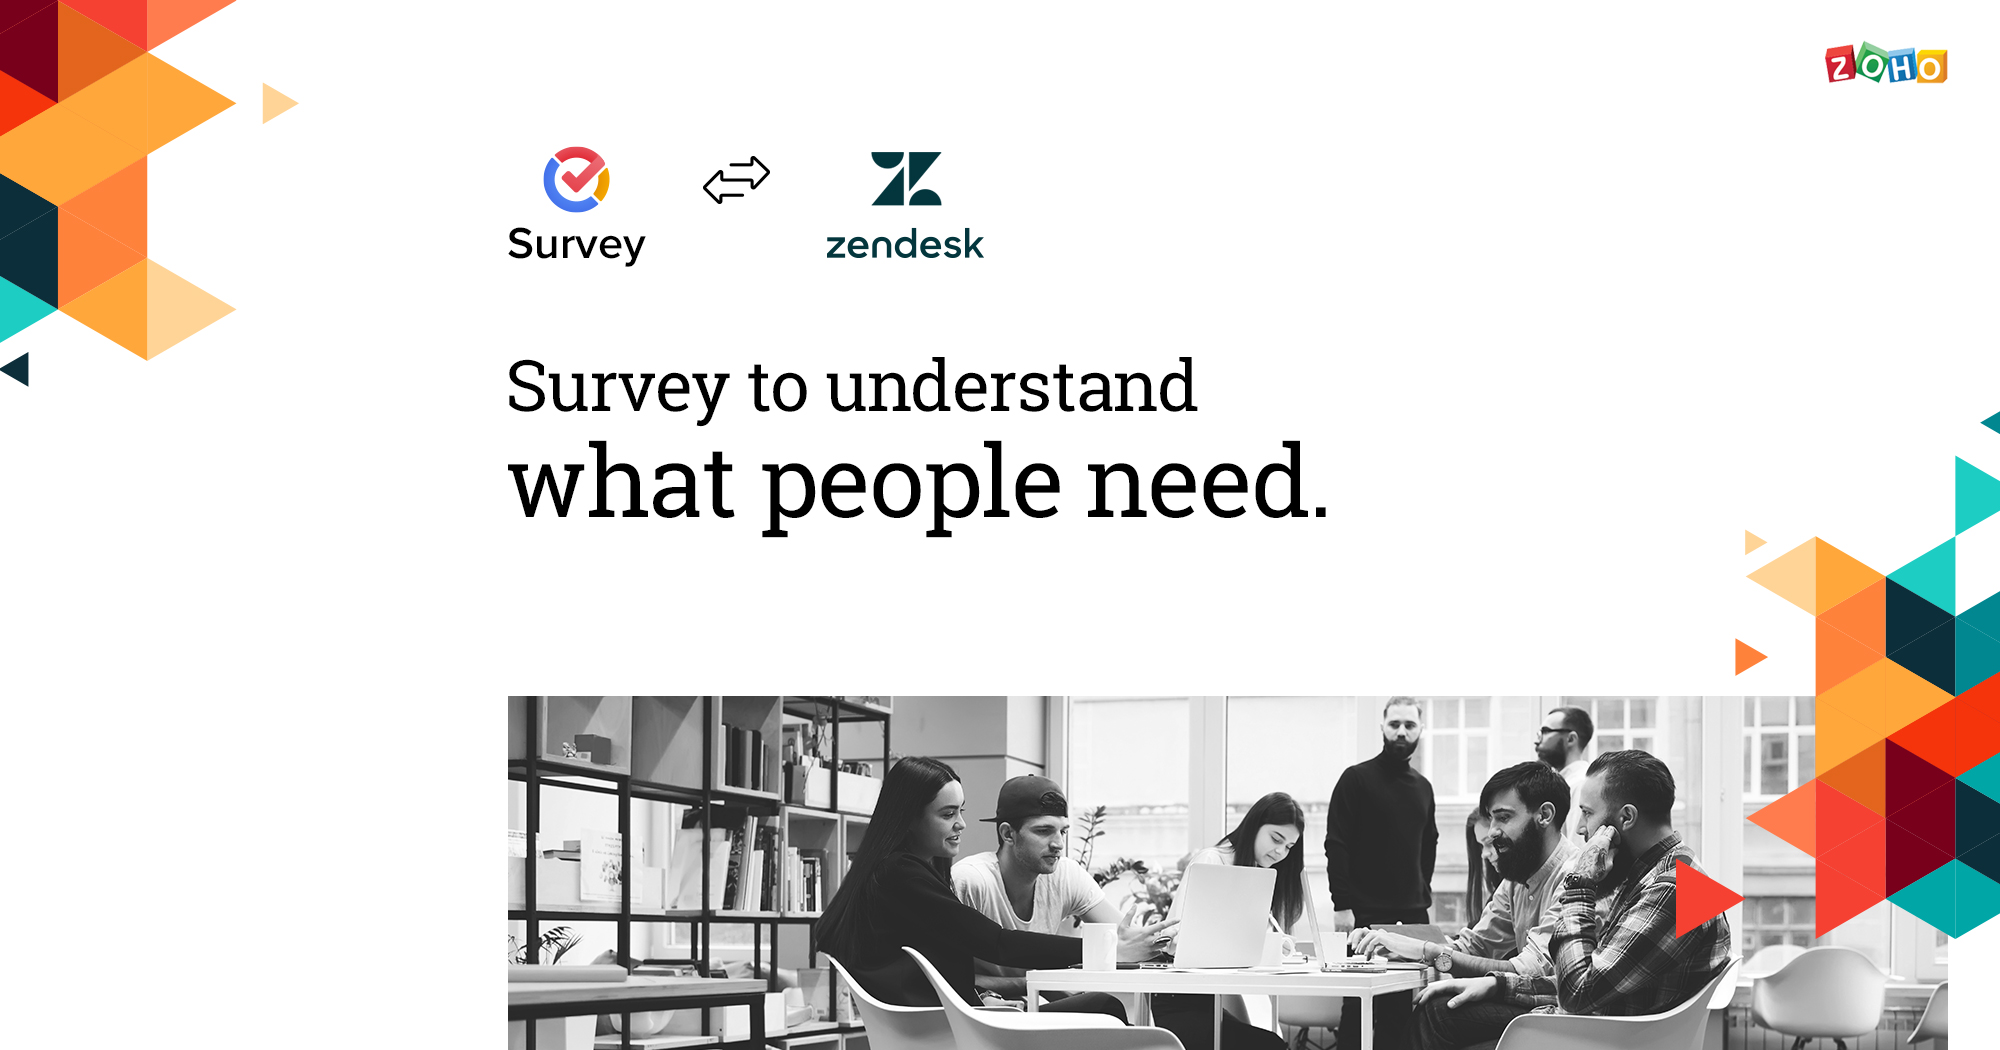 Integration-Zendesk-and-Zoho-Survey